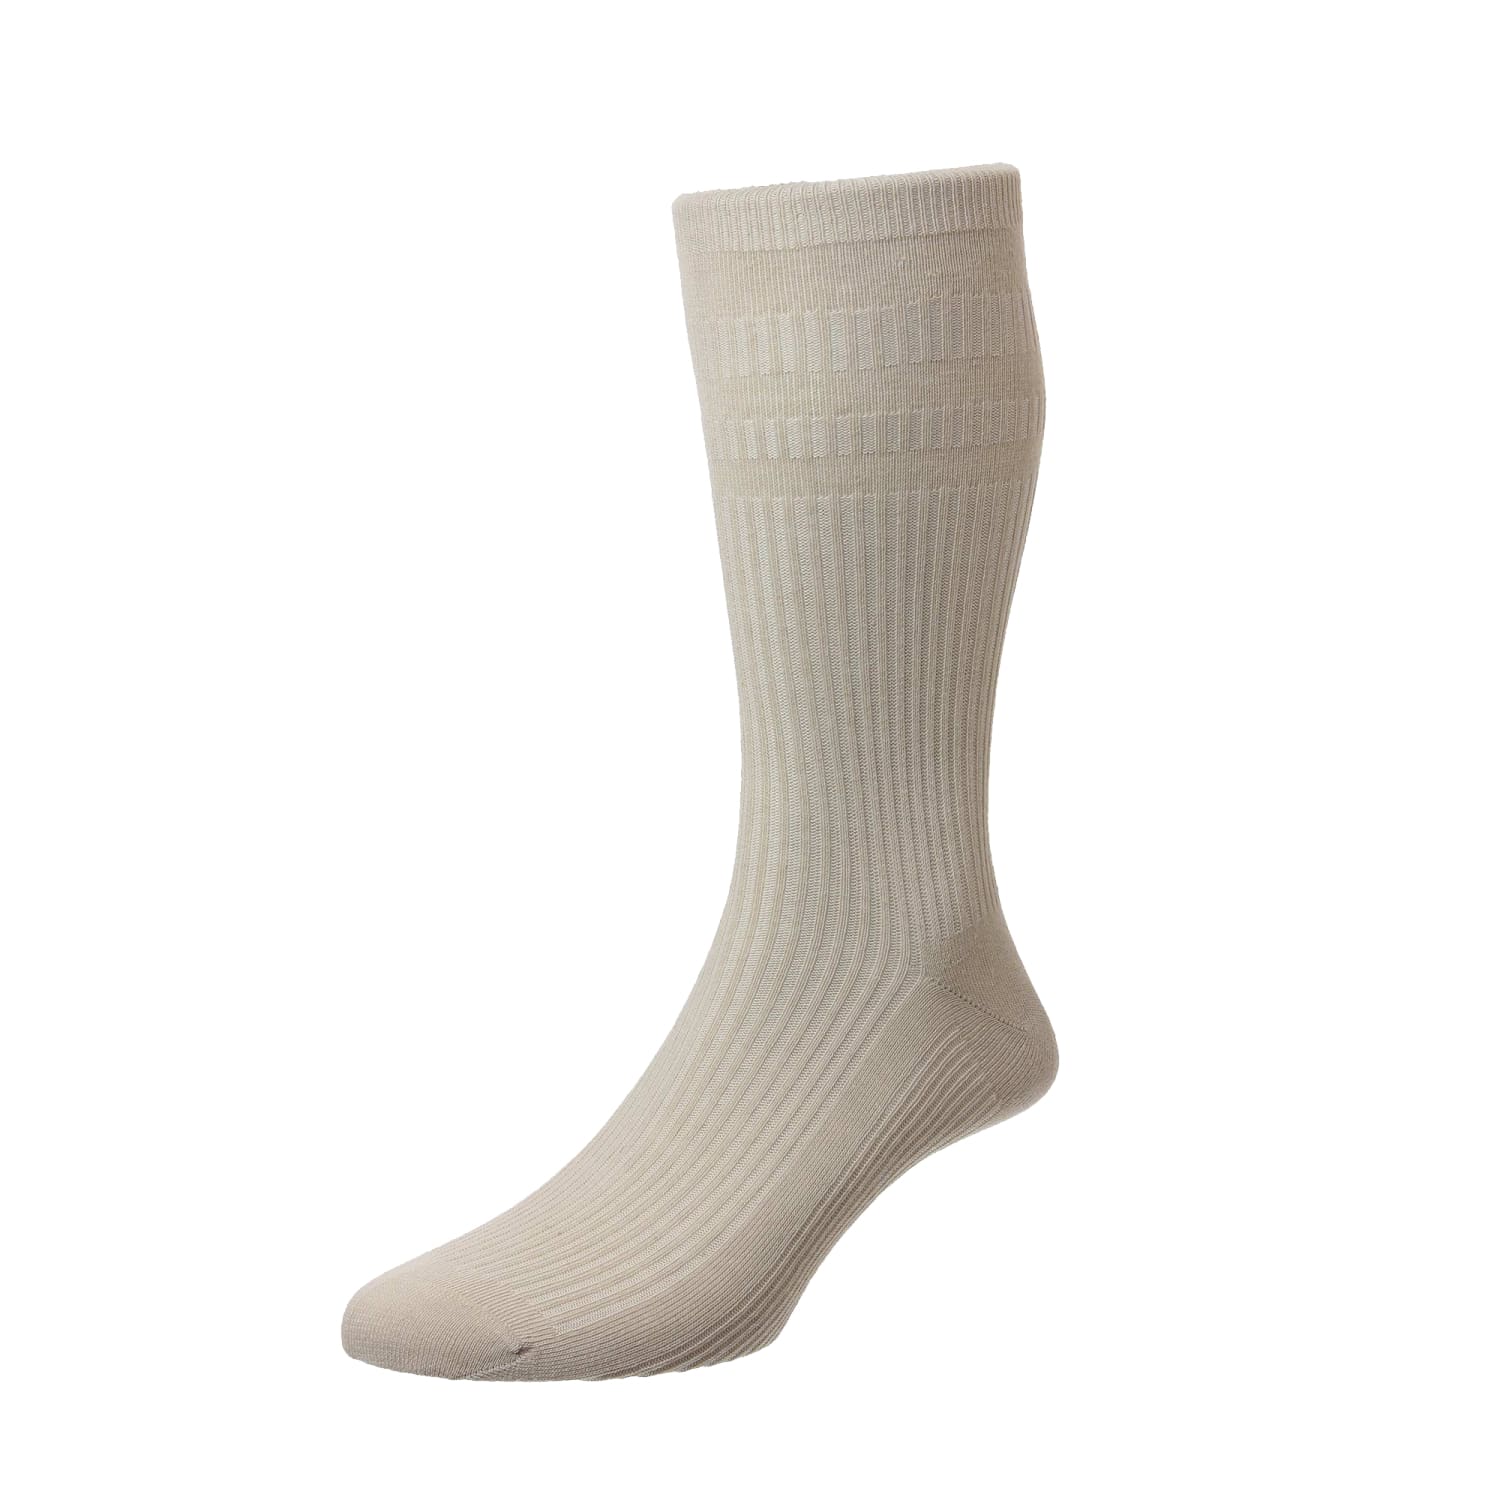 HJ Softop Socks - HJ91 - Cotton - Oatmeal 1